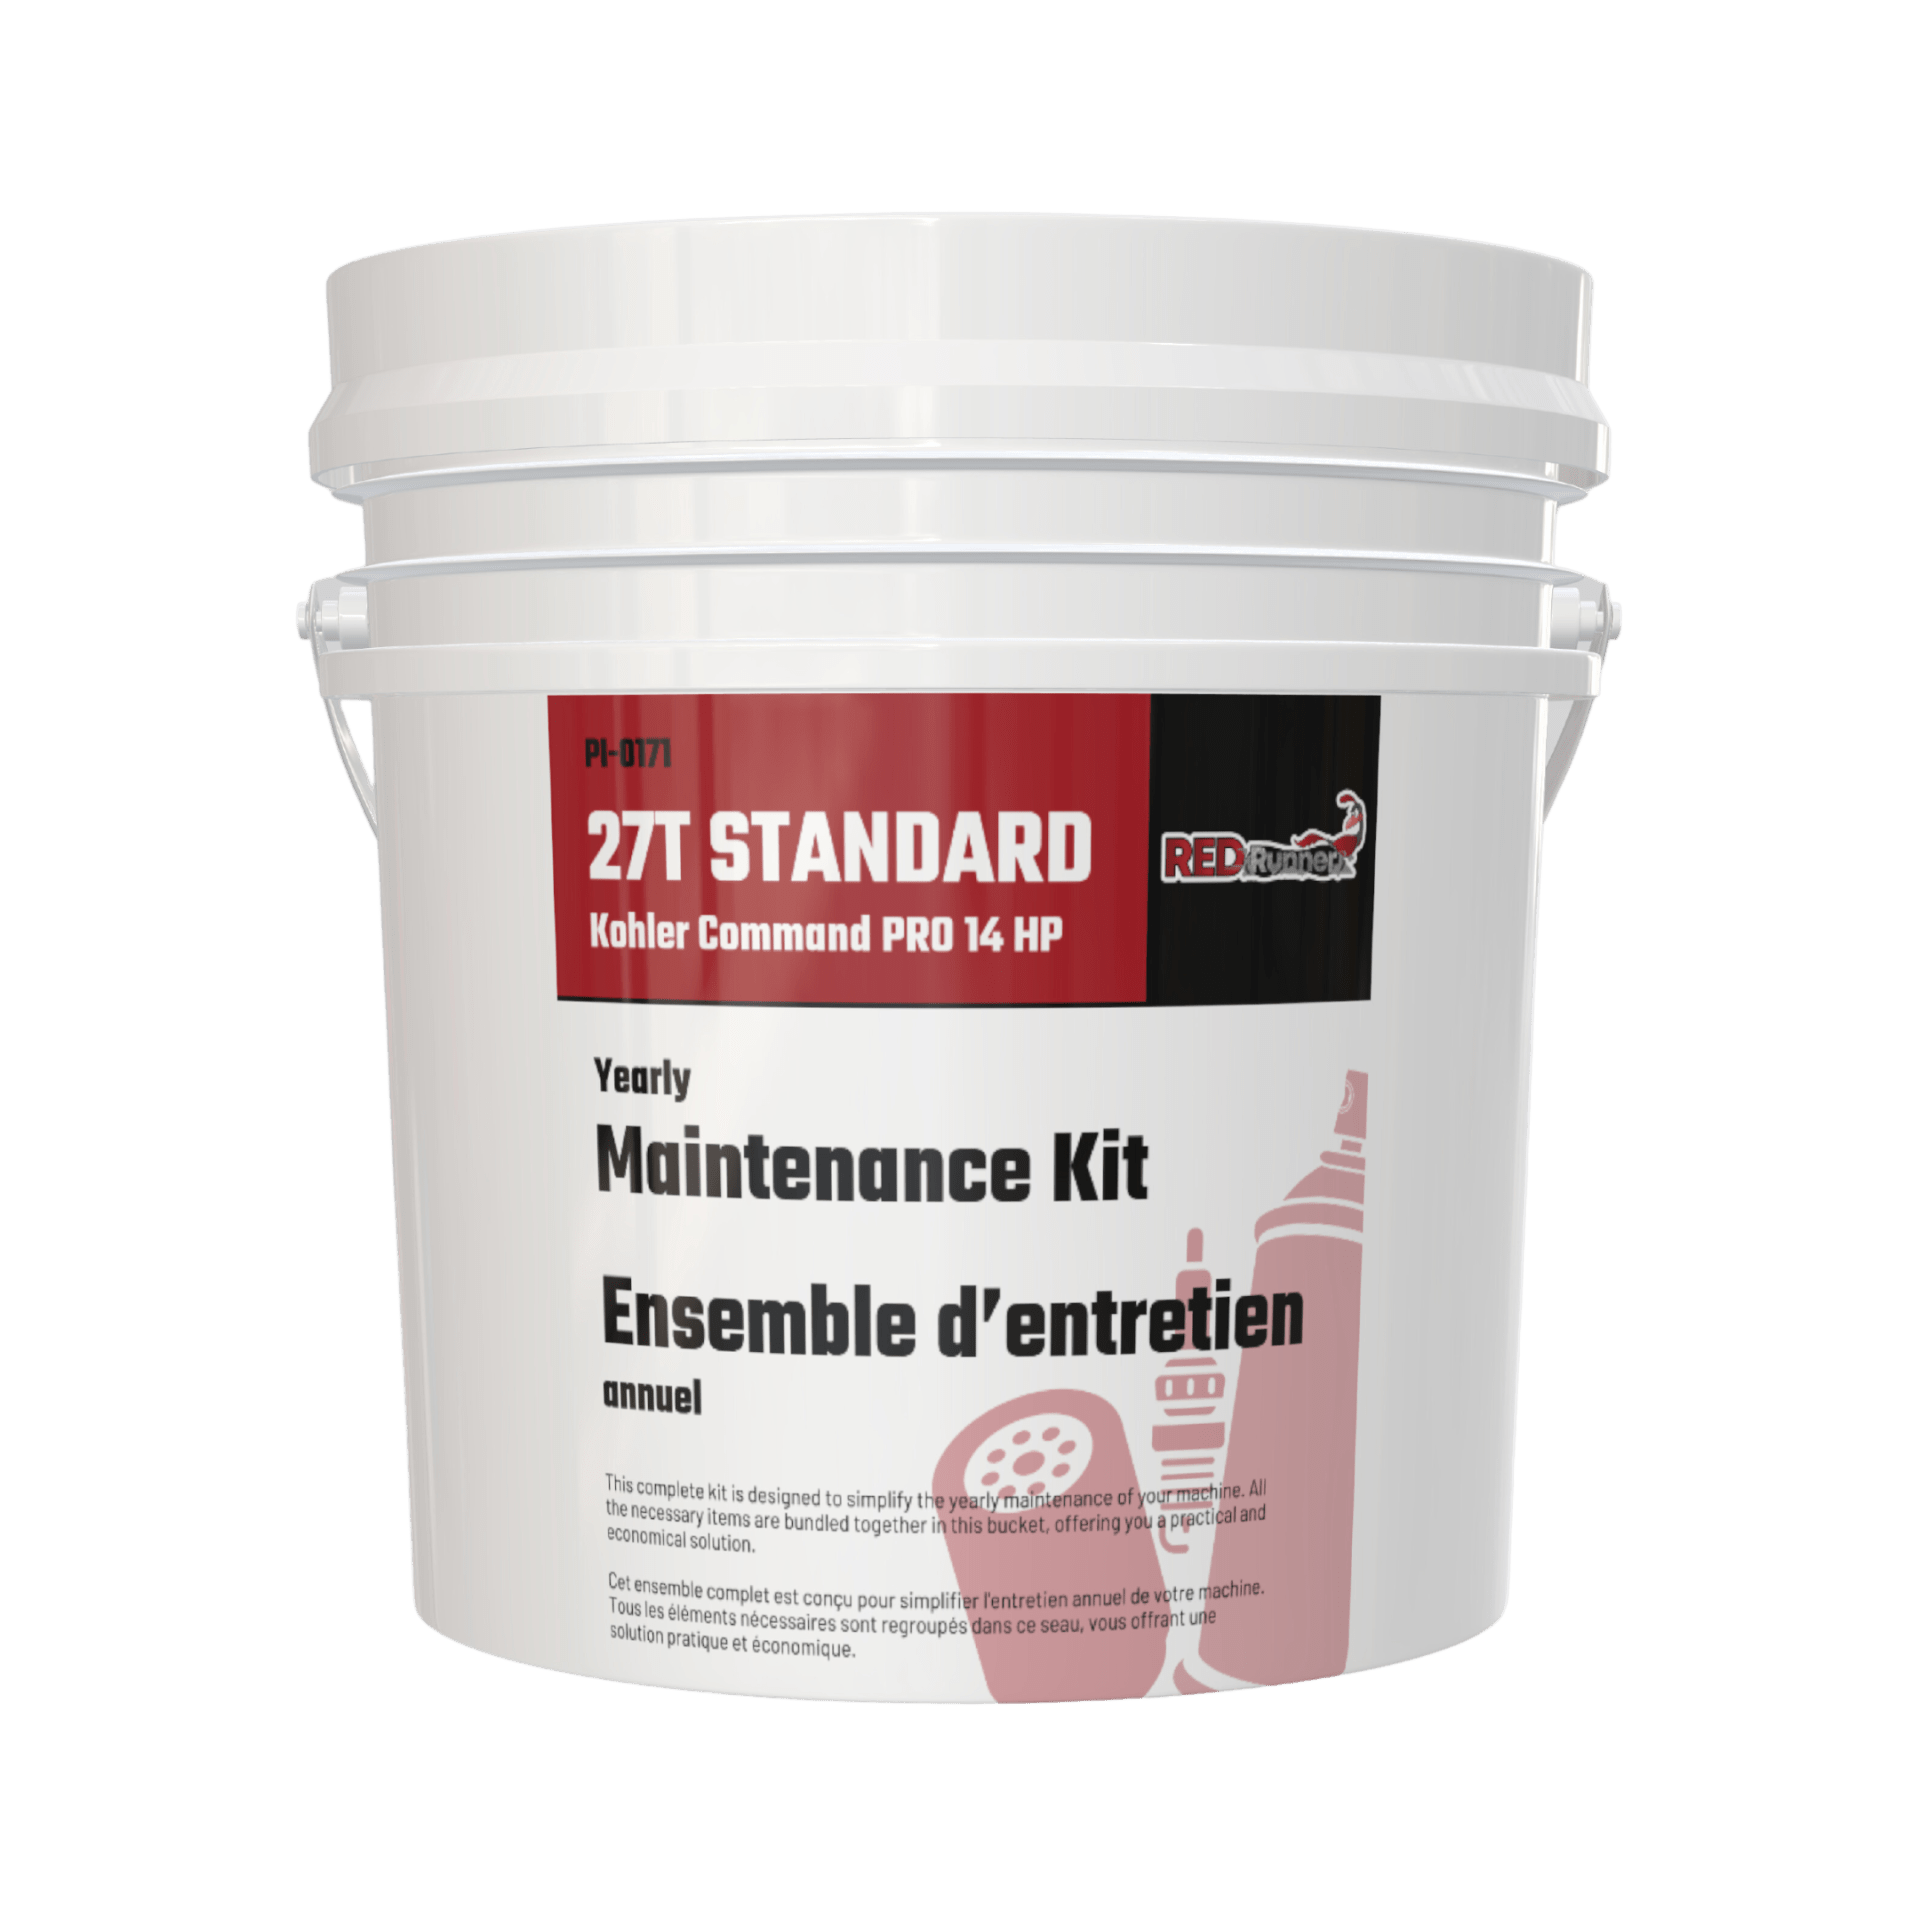 Maintenance Kit for Red Runner 27T Standard